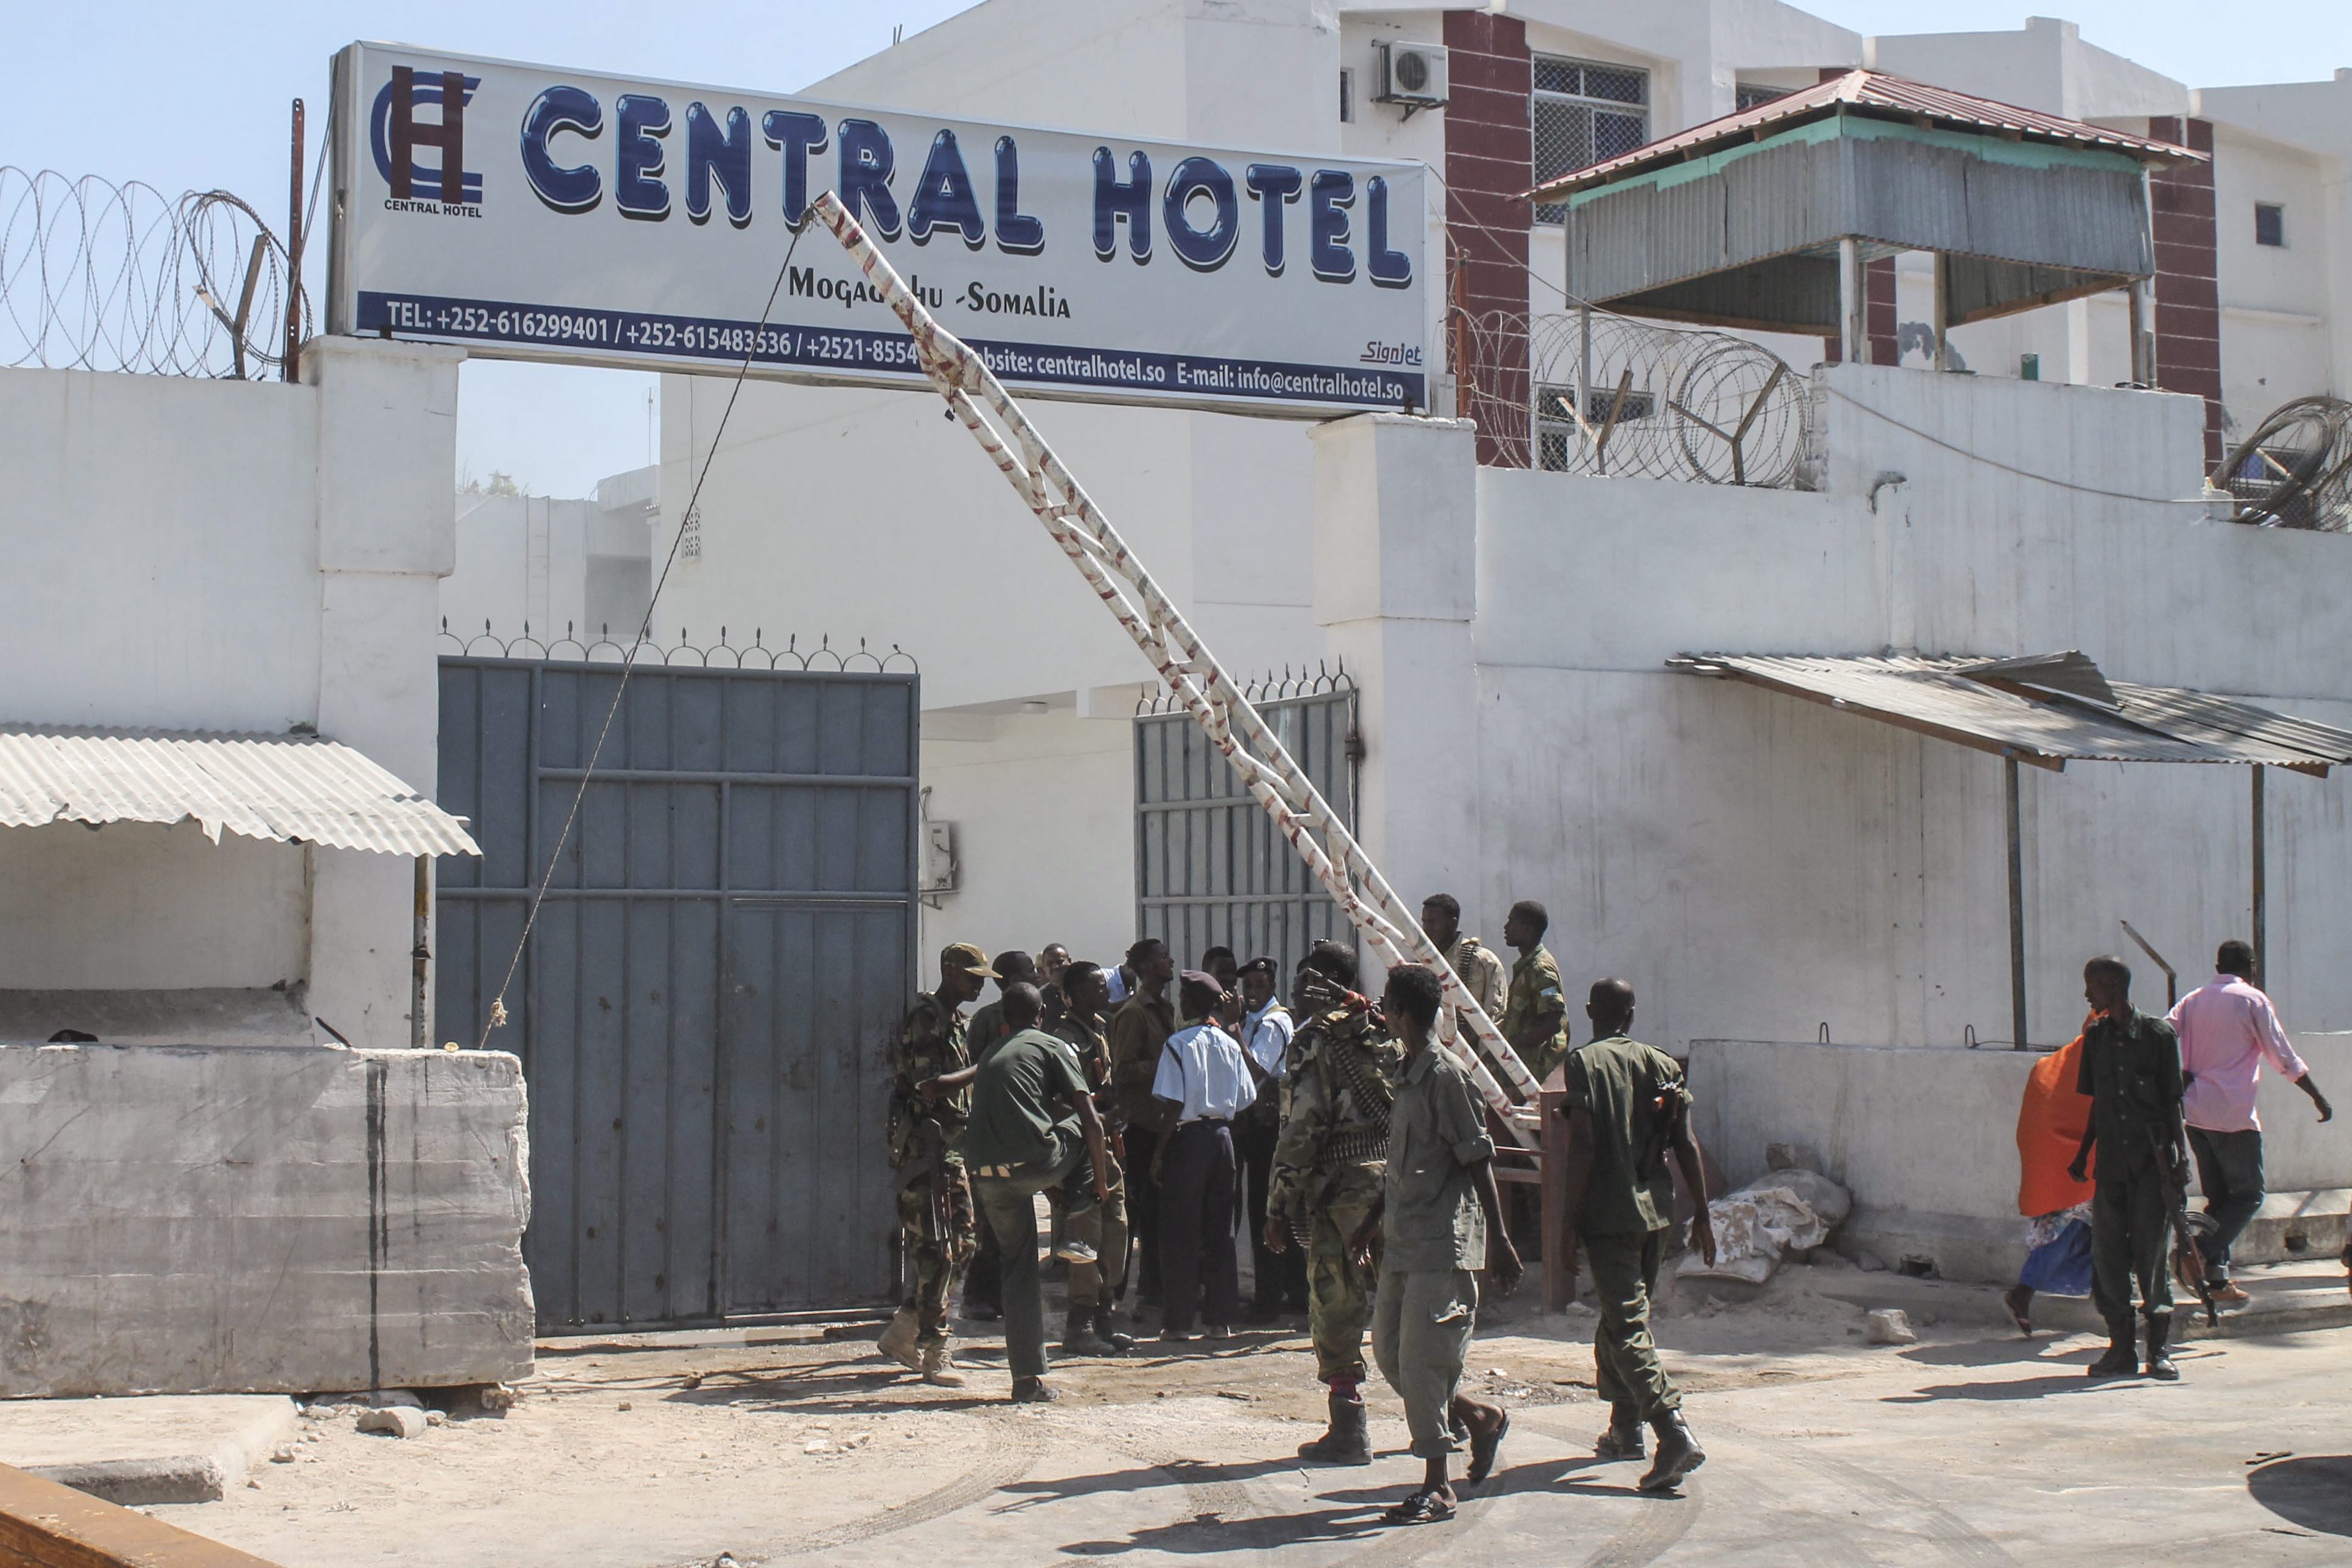 Σομαλία: Οι καμικάζι του ξενοδοχείου Σέντραλ είχαν σομαλική και ολλανδική υπηκοότητα